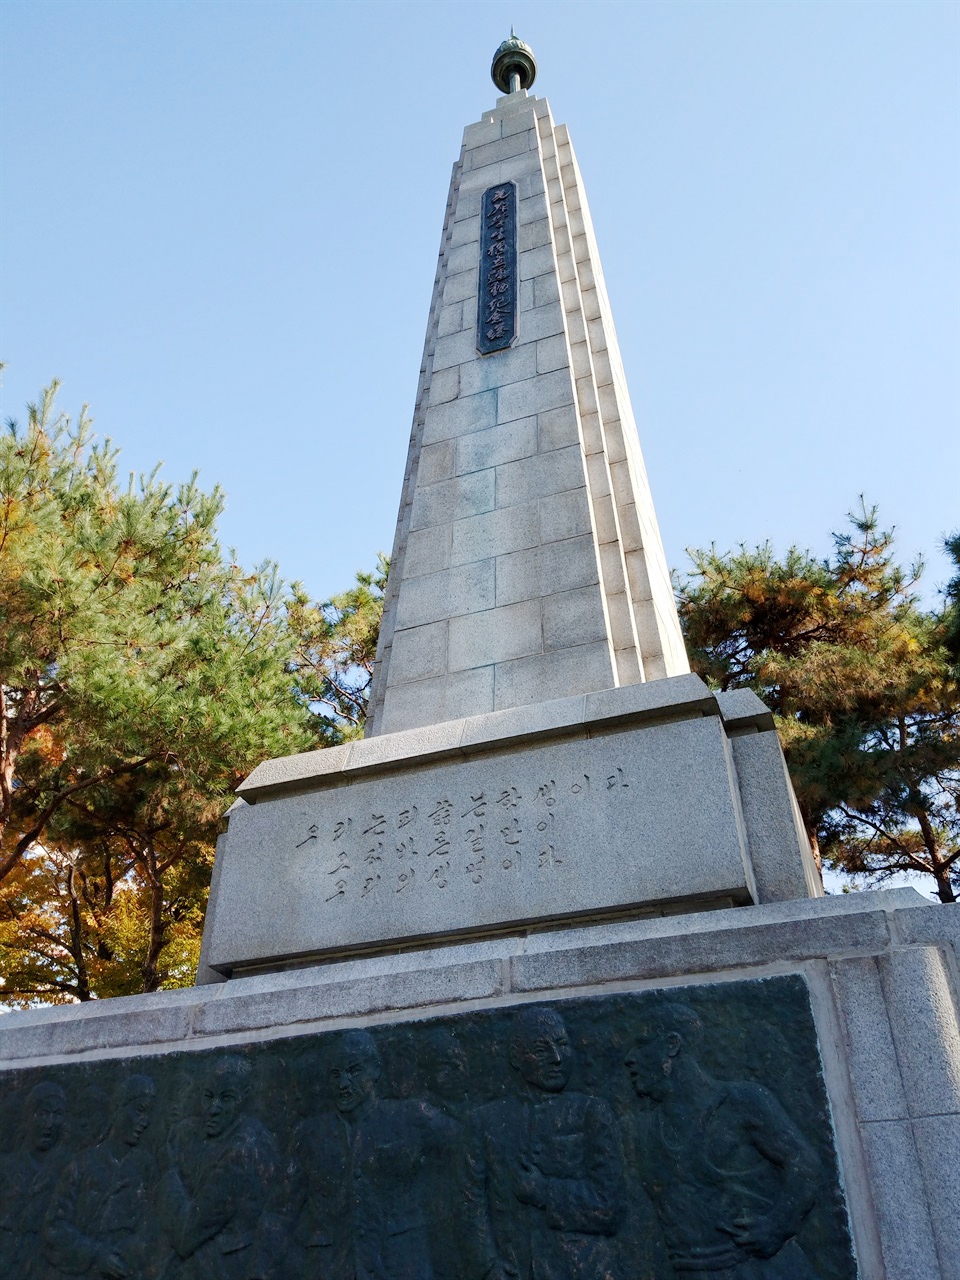 1953년 이승만 정부에 의해 세워진 최초의 광주학생독립운동 기념탑. 당시 광주고등보통학교였던 광주제일고등학교 교정에 있다.